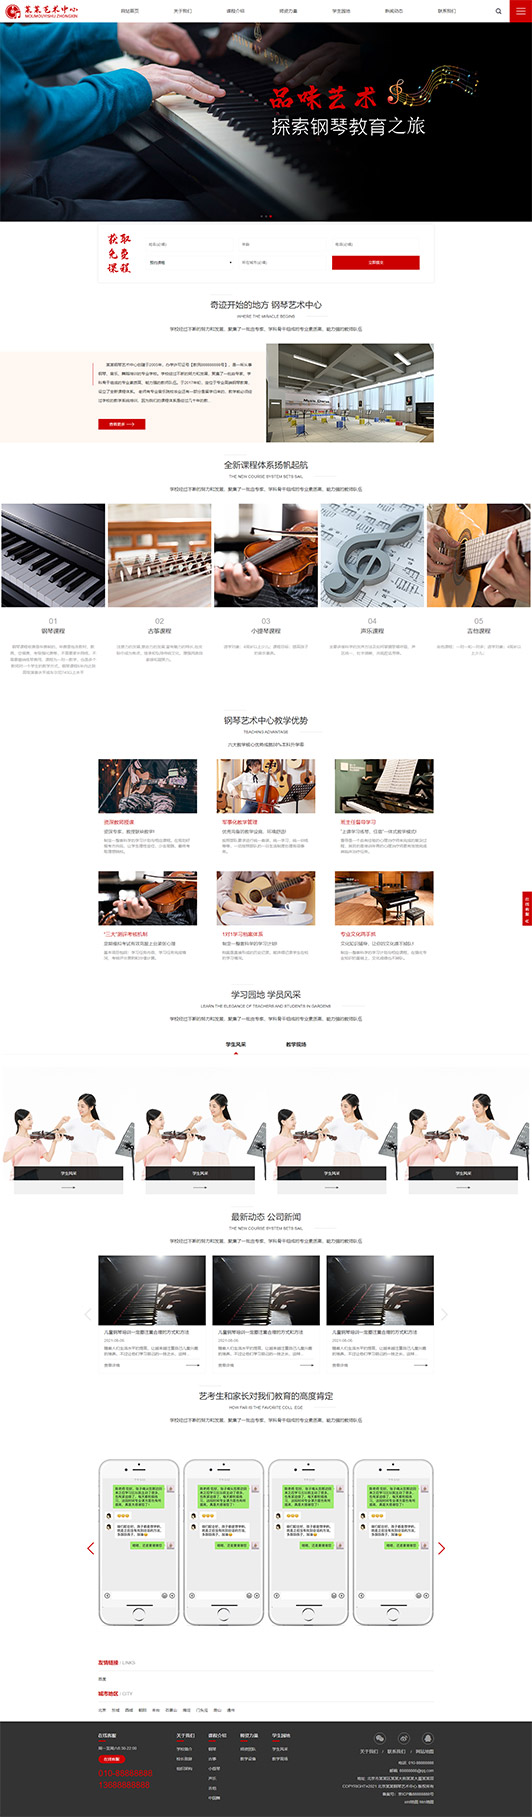 五指山钢琴艺术培训公司响应式企业网站